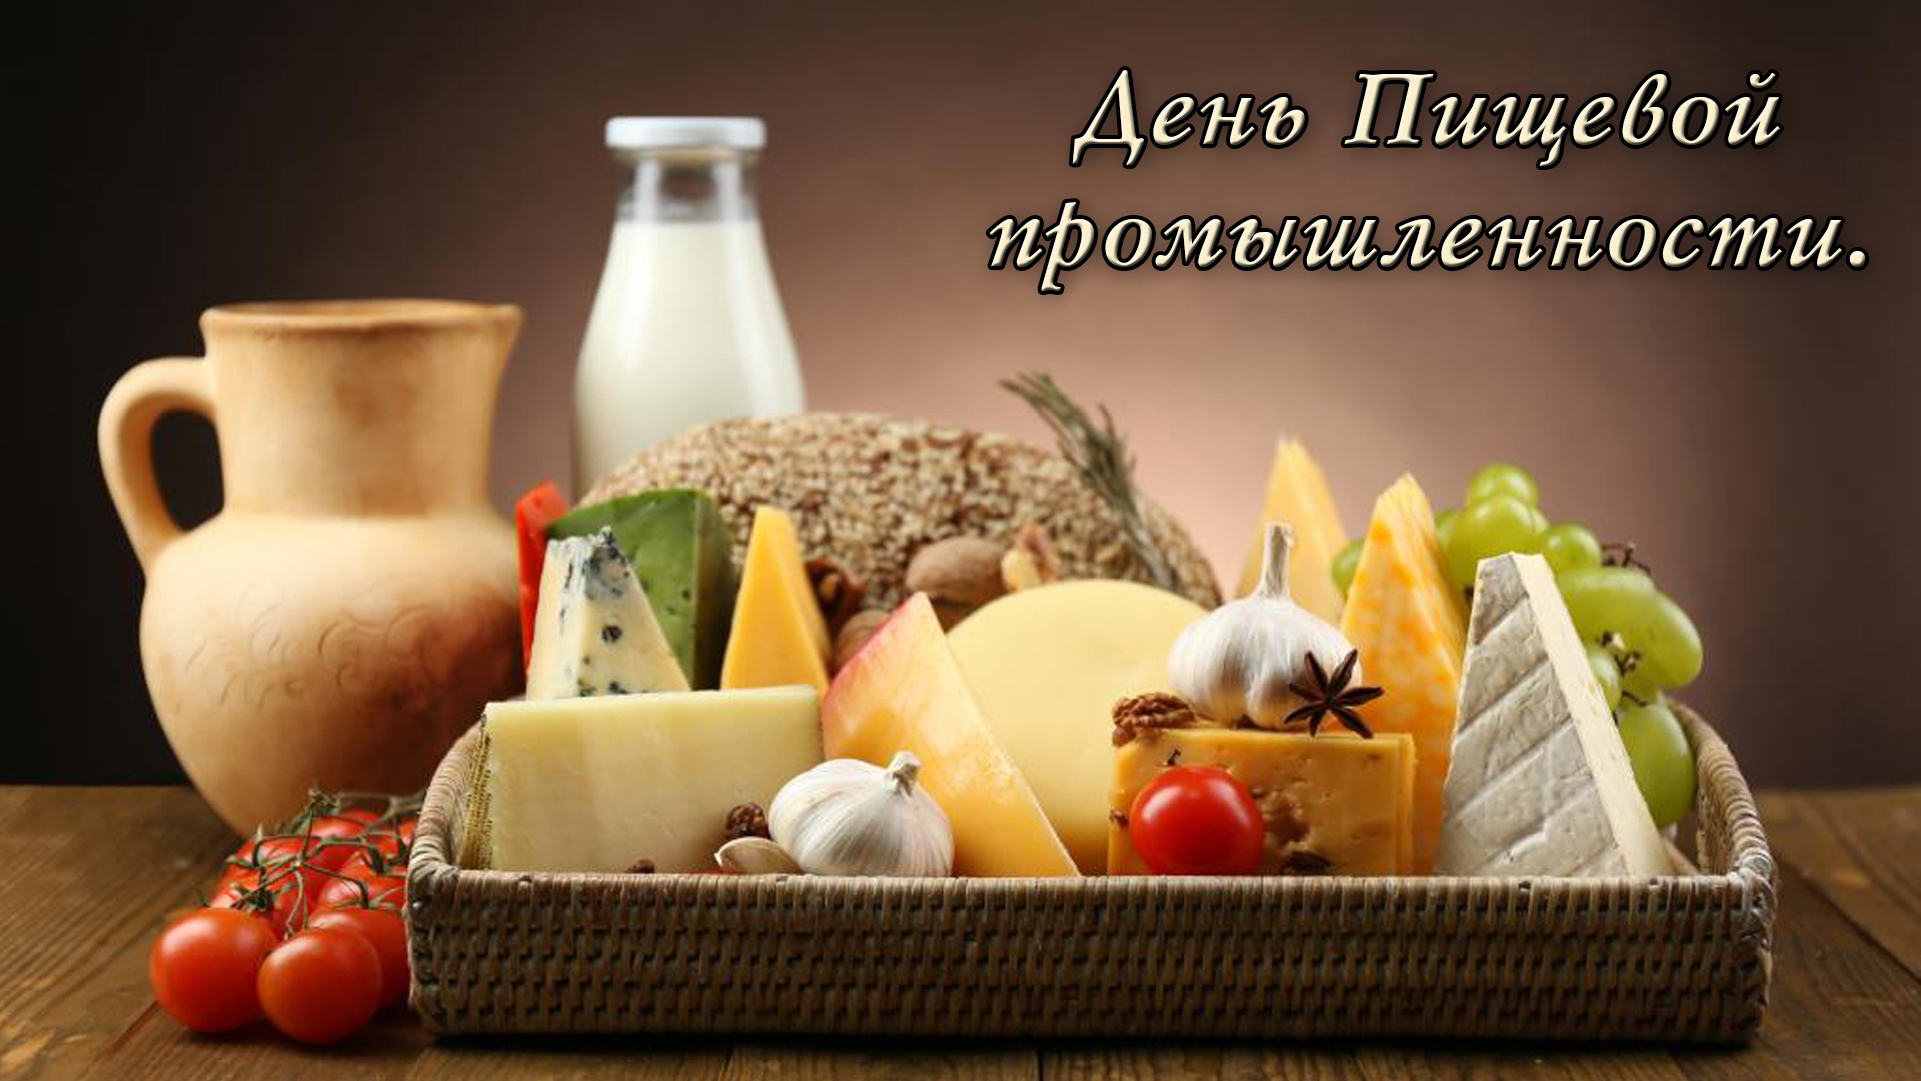 Открытка, день пищевой промышленности, продукты, молоко, сыр, фрукты, виноград, чеснок, помидоры, овощи